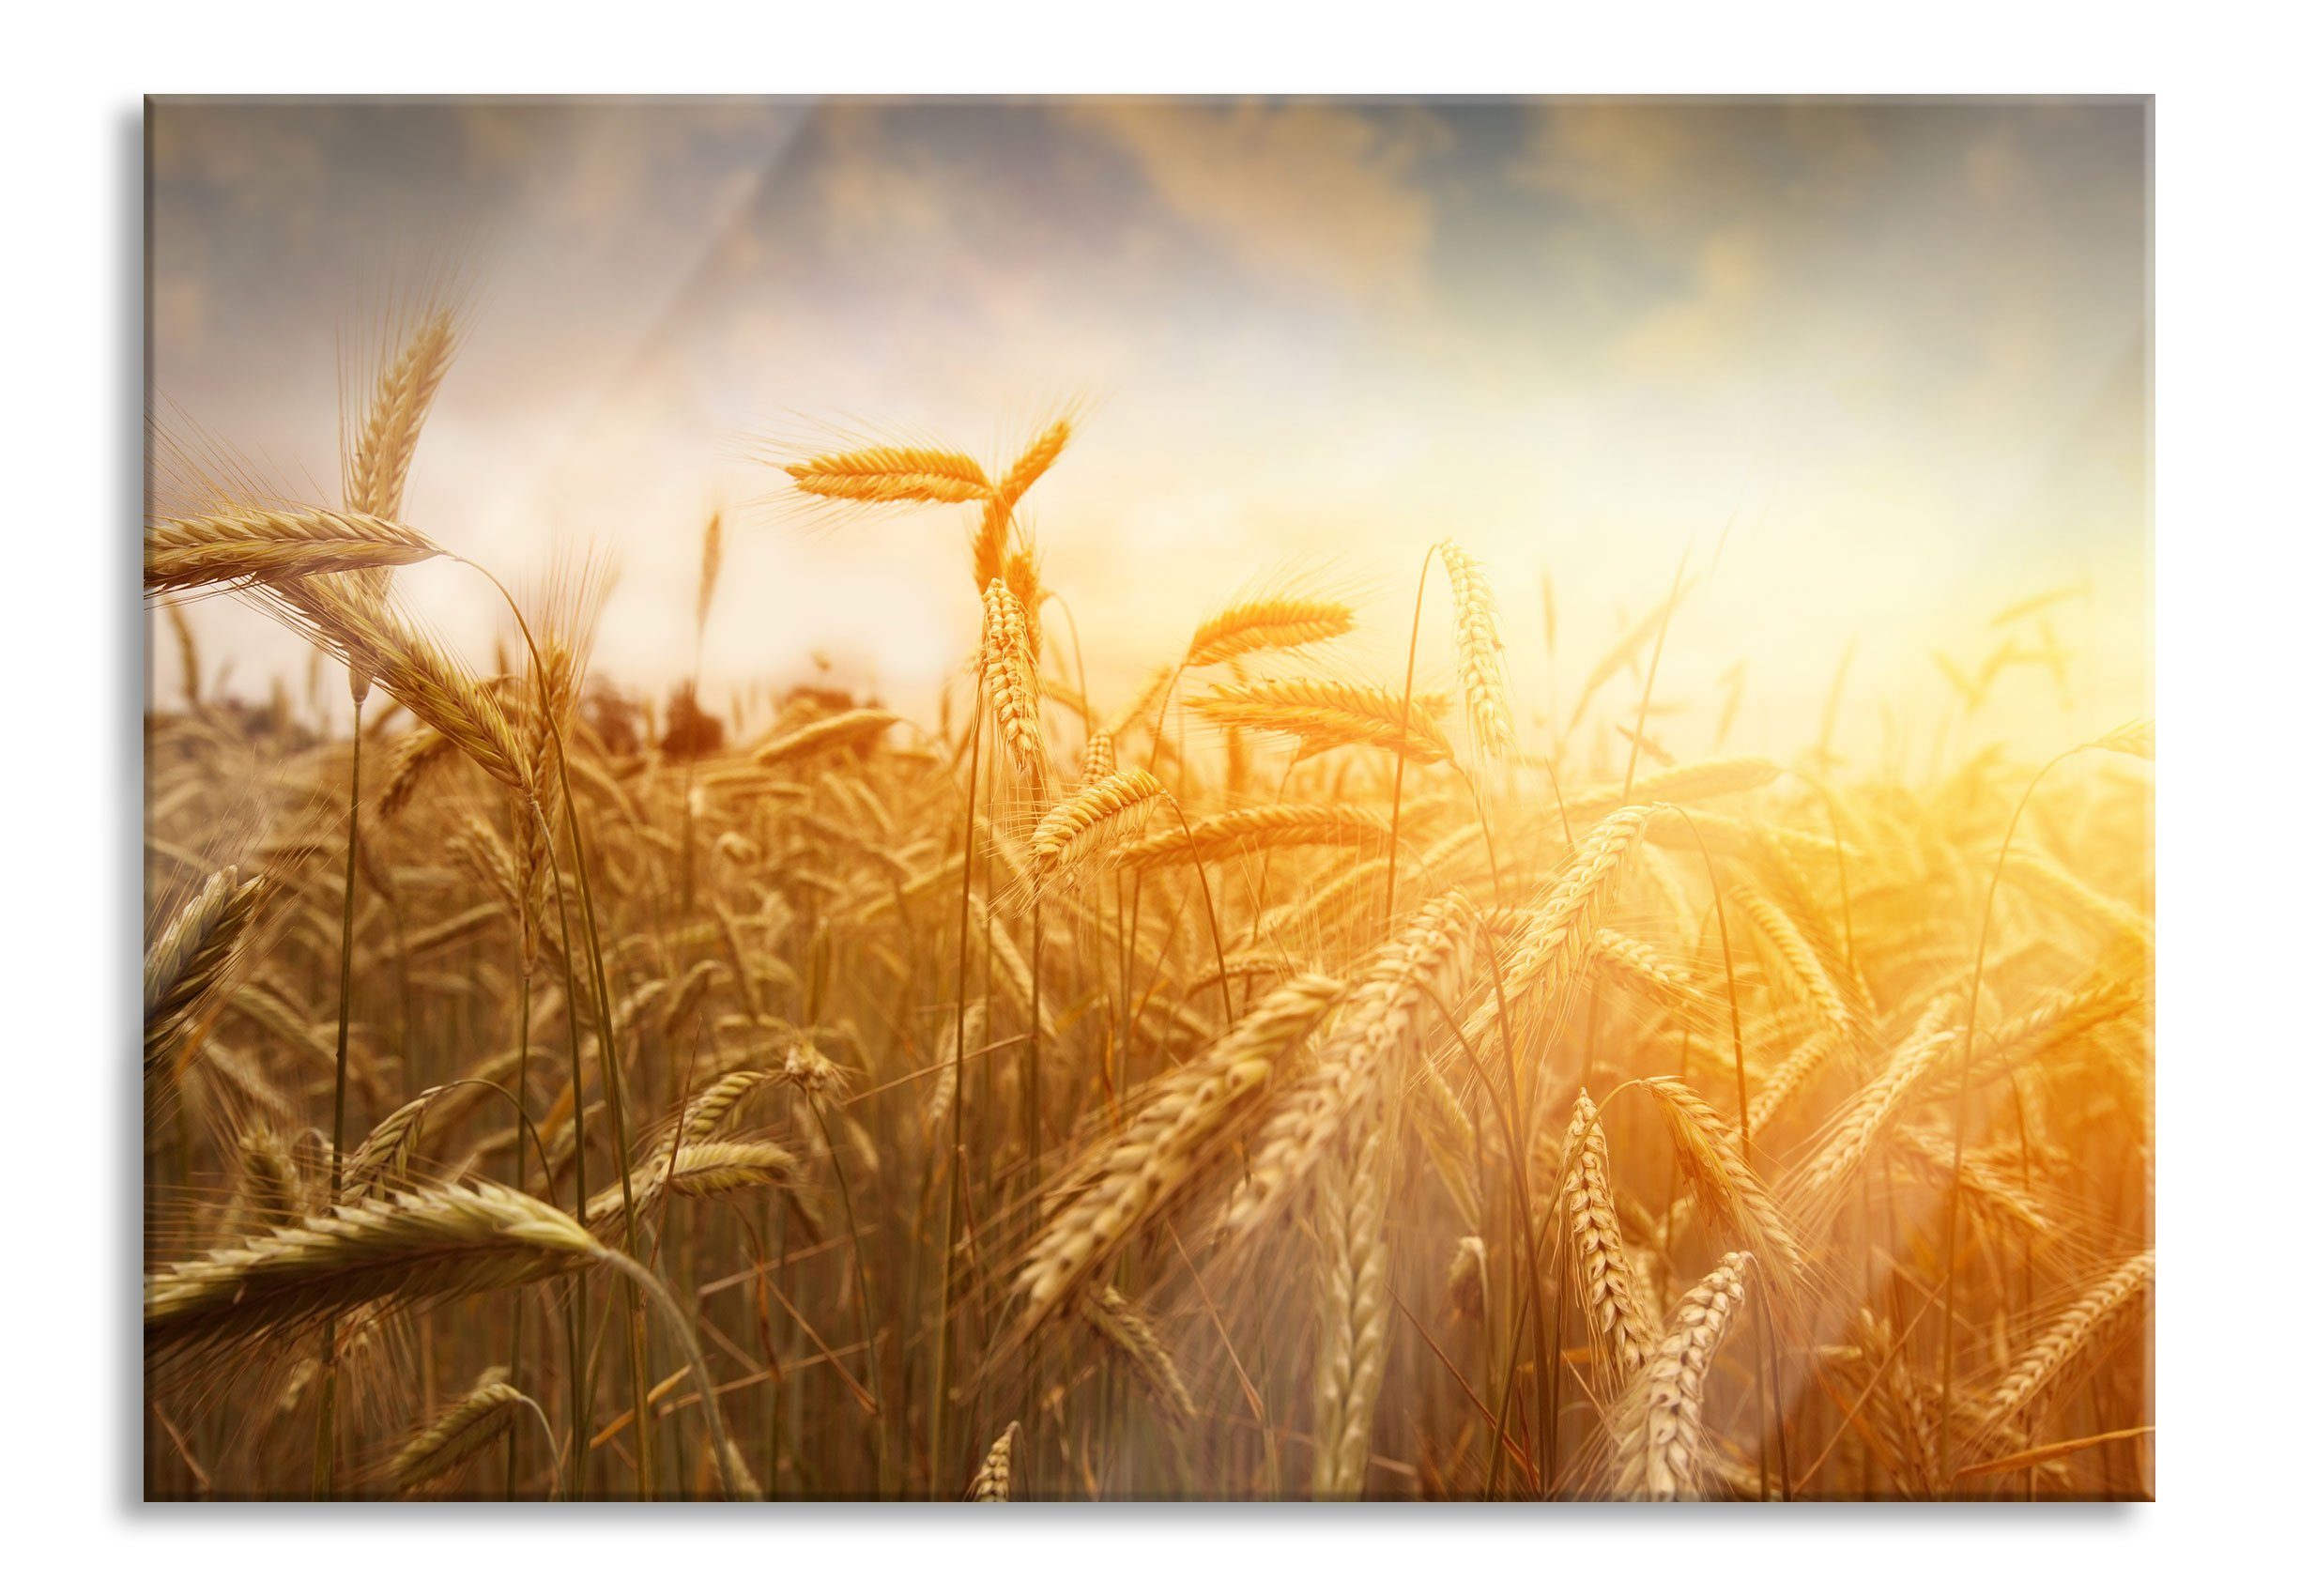 Pixxprint Glasbild Getreide im Sonnenlicht, Getreide im Sonnenlicht (1 St), Glasbild aus Echtglas, inkl. Aufhängungen und Abstandshalter